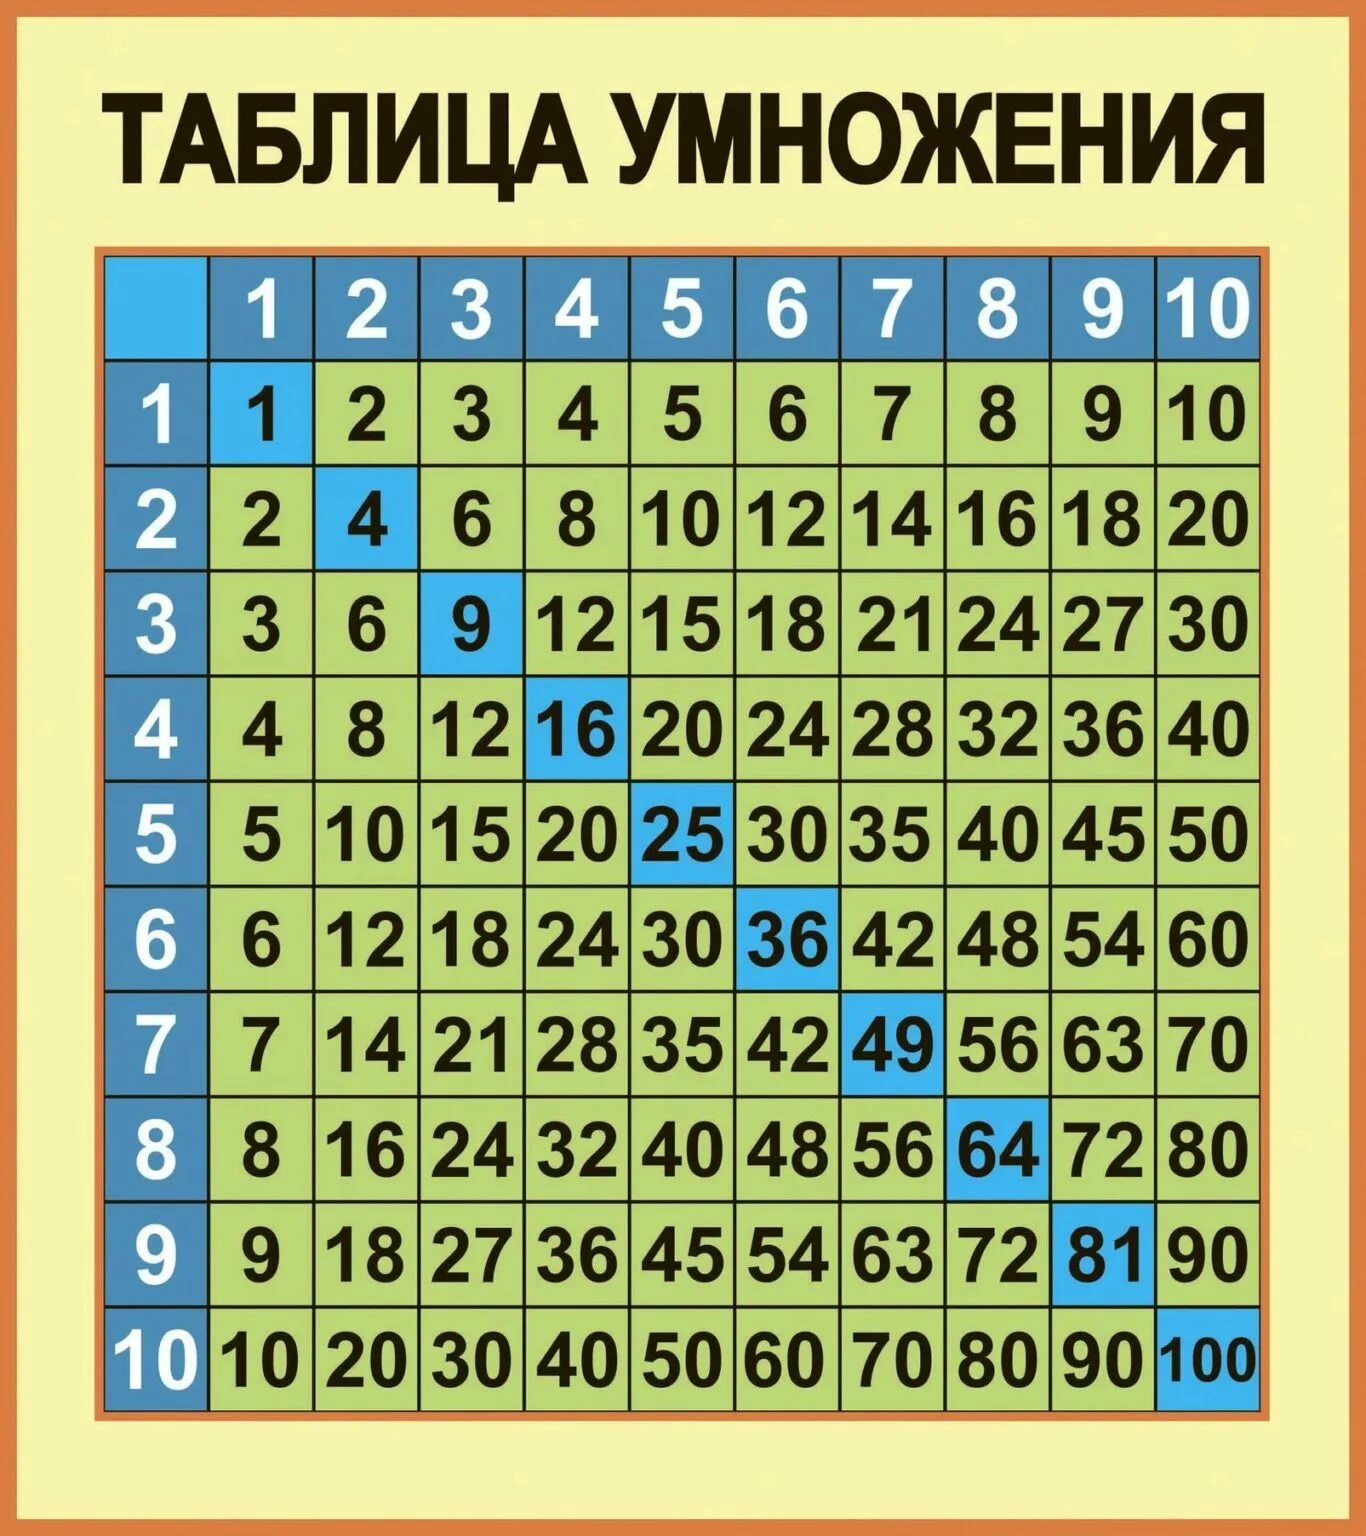 Покажи всю таблицу умножения. Таблица умножения. Далбитца помножения. Таблица умножения таблица. NF,kbwf ум.